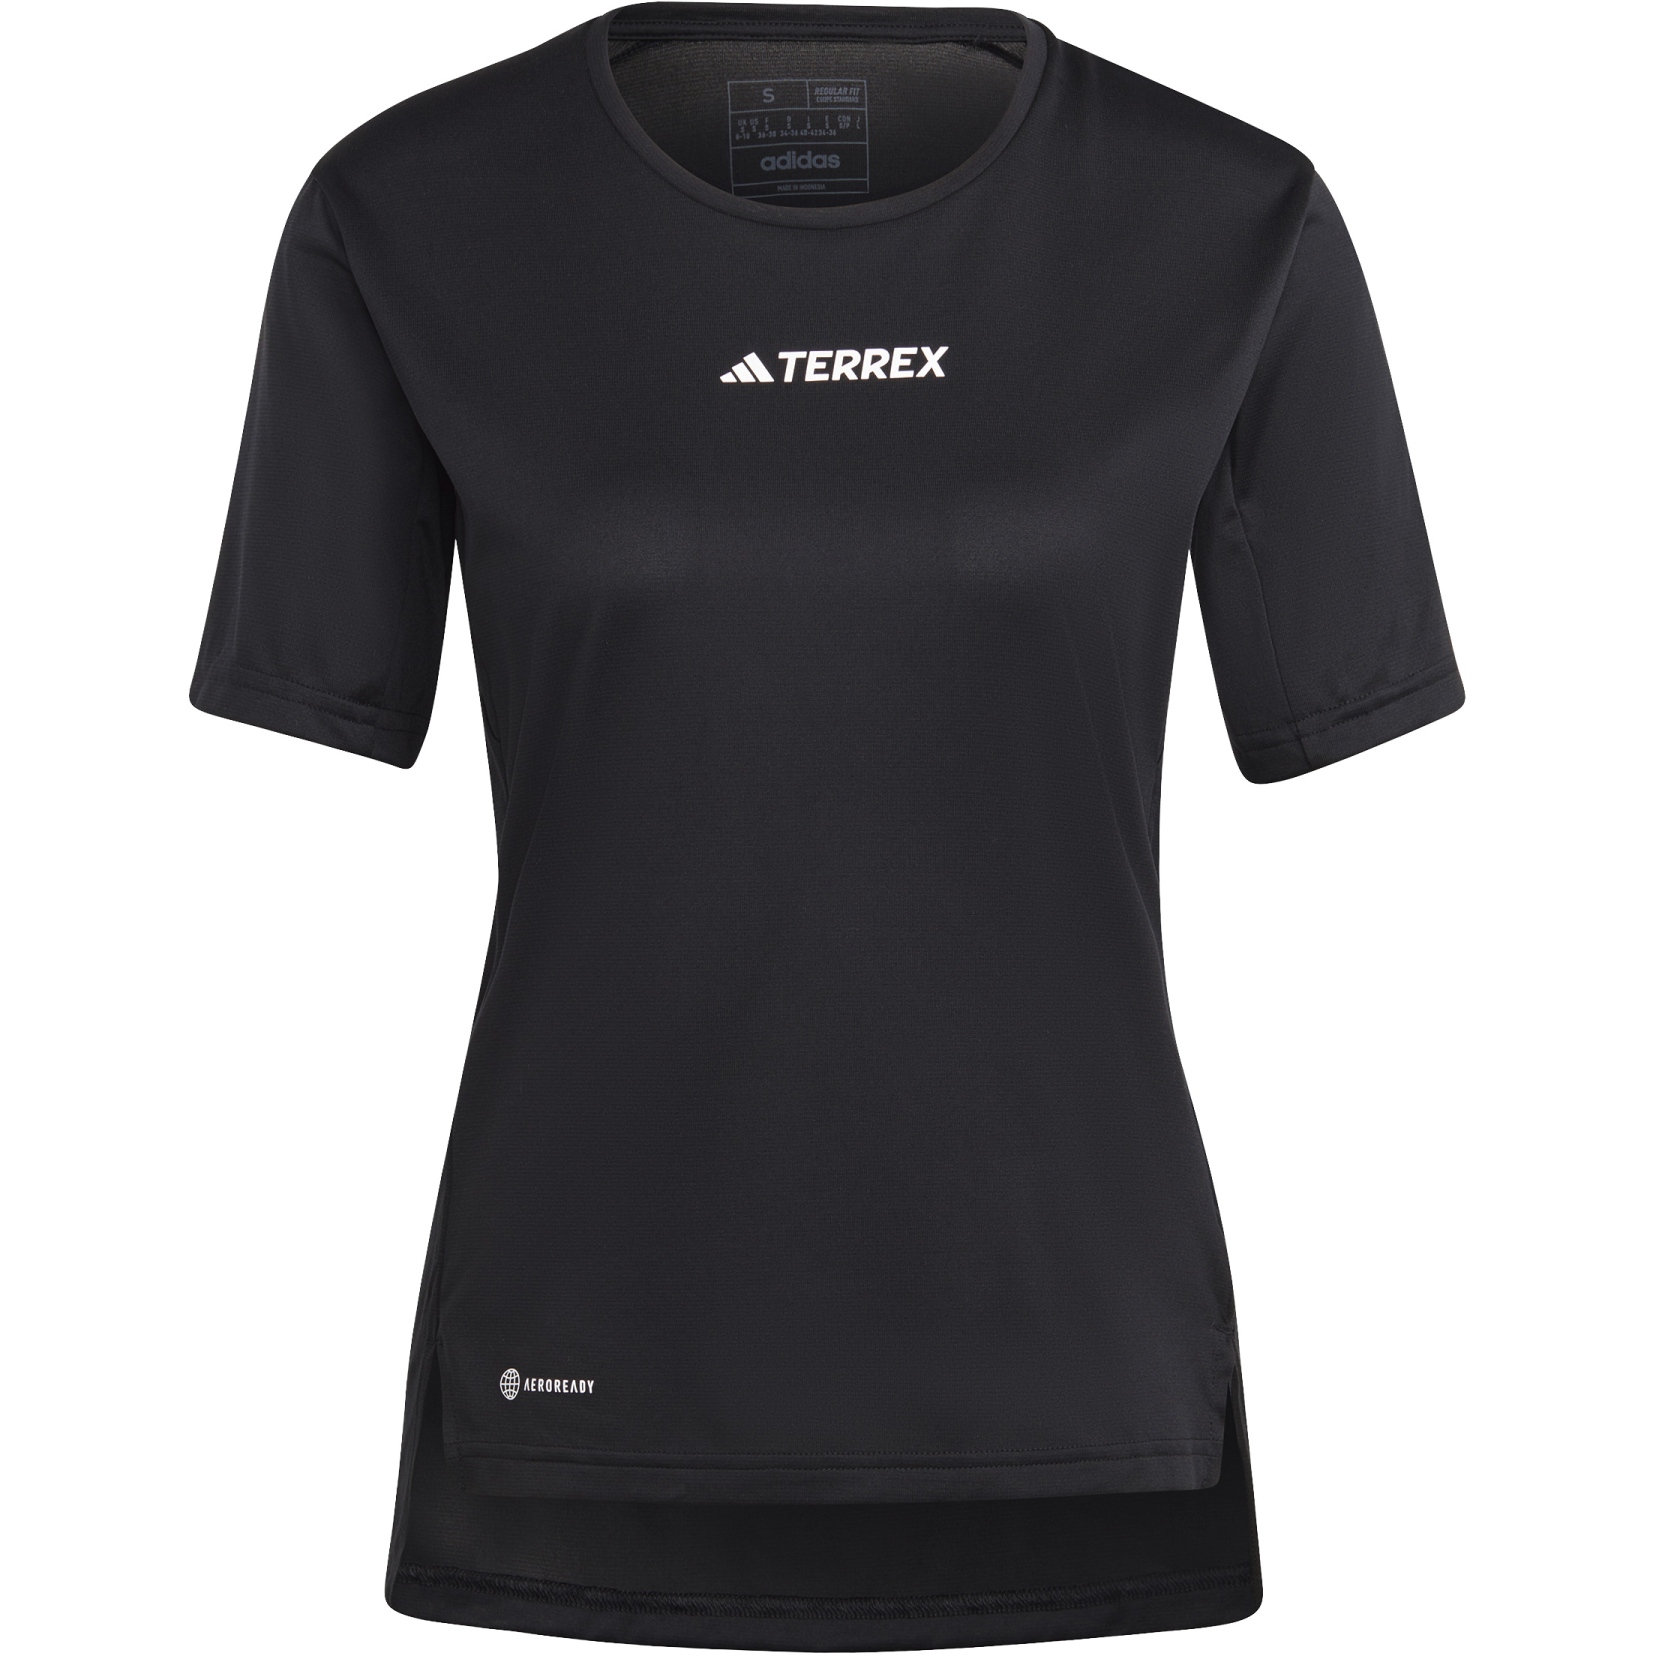 Produktbild von adidas TERREX Multi T-Shirt Damen - schwarz HM4041